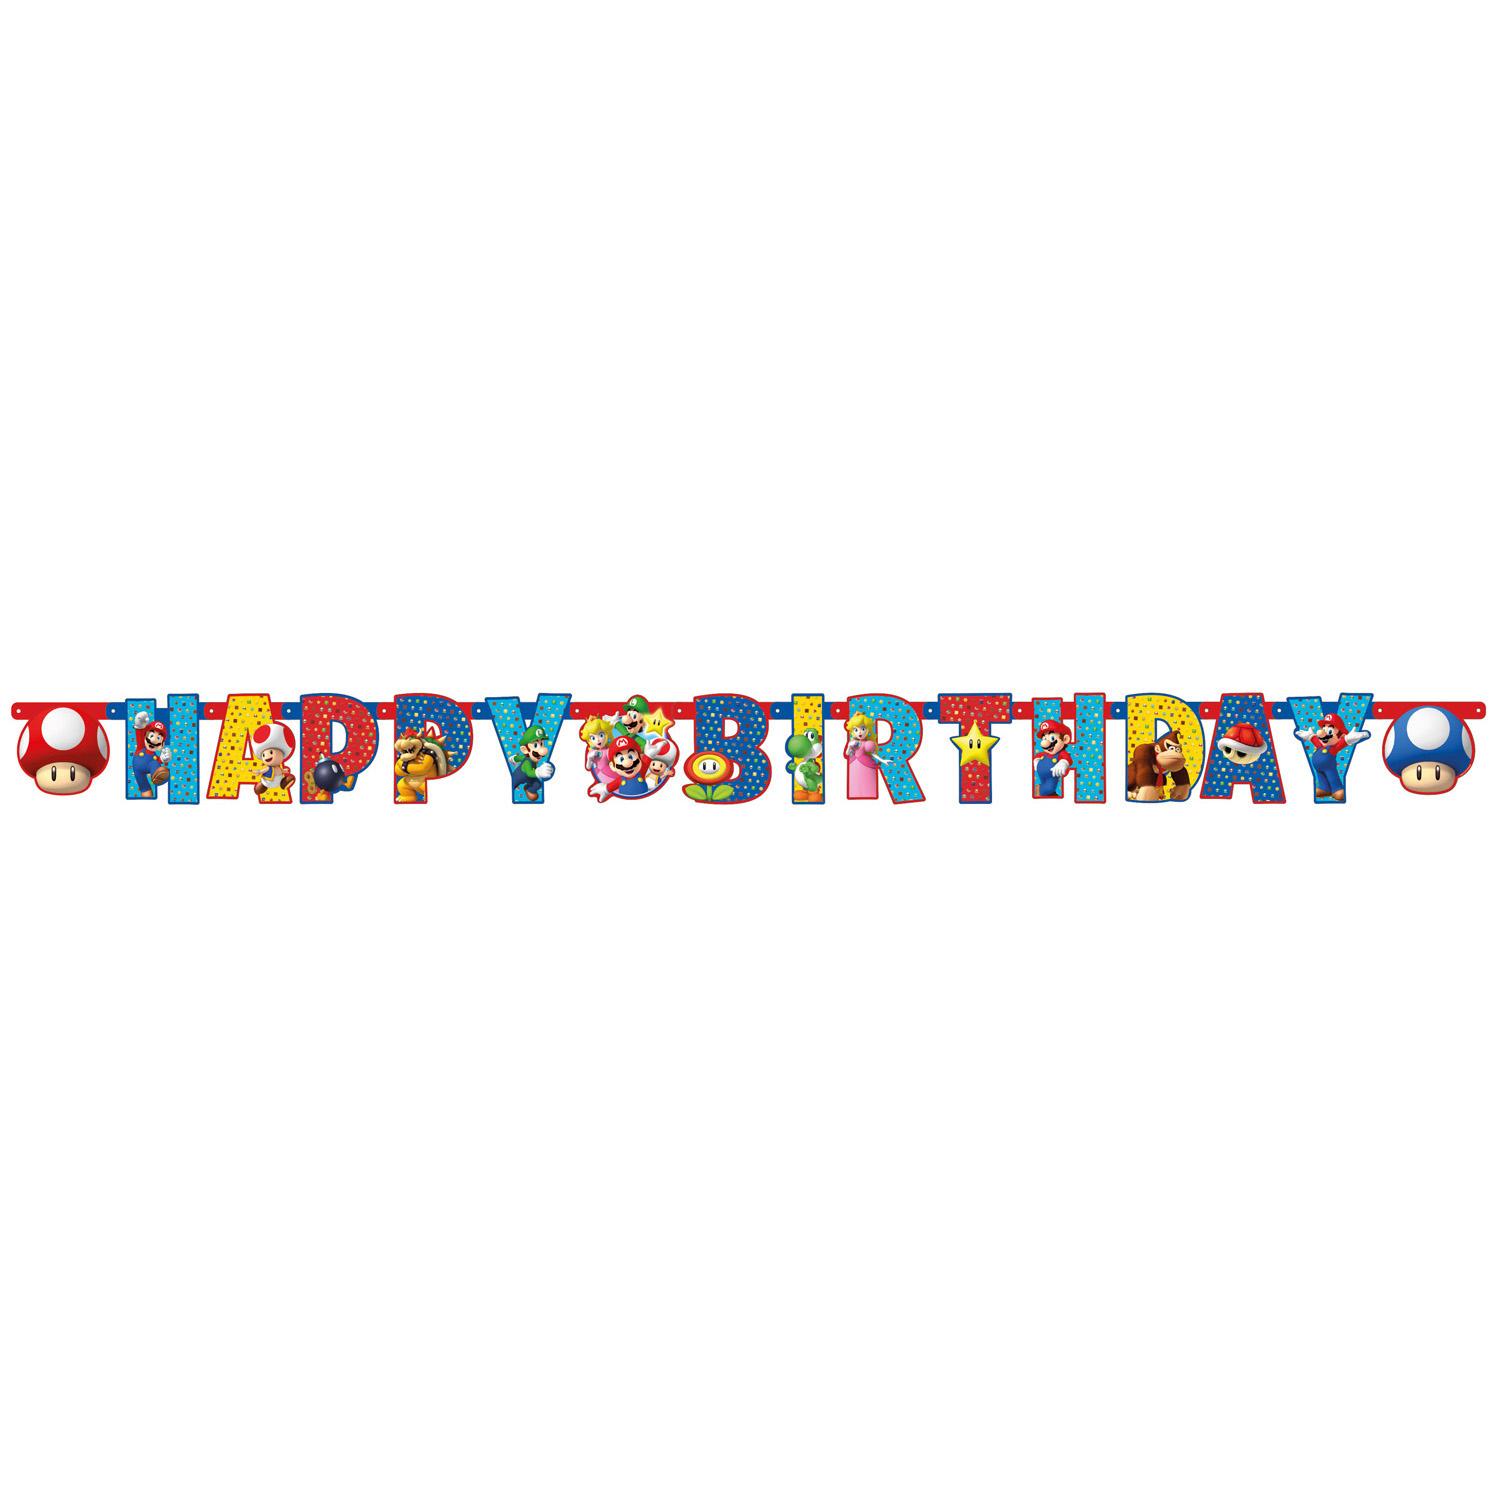 Super Mario Letter Banner 190 x 18cm Decorations - Party Centre